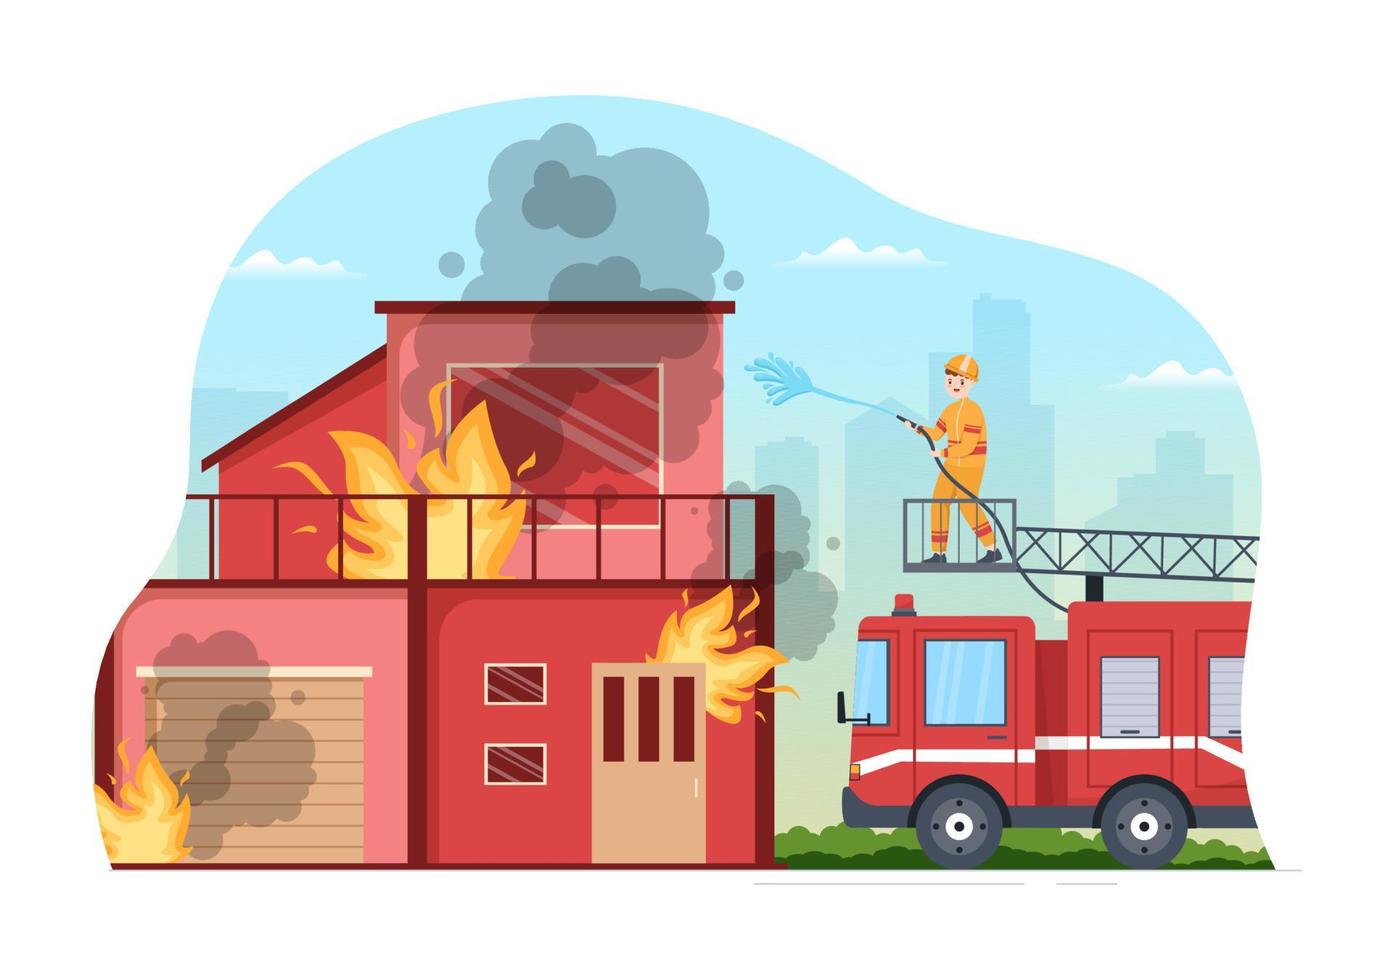 corpo de bombeiros com bombeiros extinguindo casa, floresta e ajudando pessoas em várias situações em ilustração de desenho animado desenhada à mão plana vetor